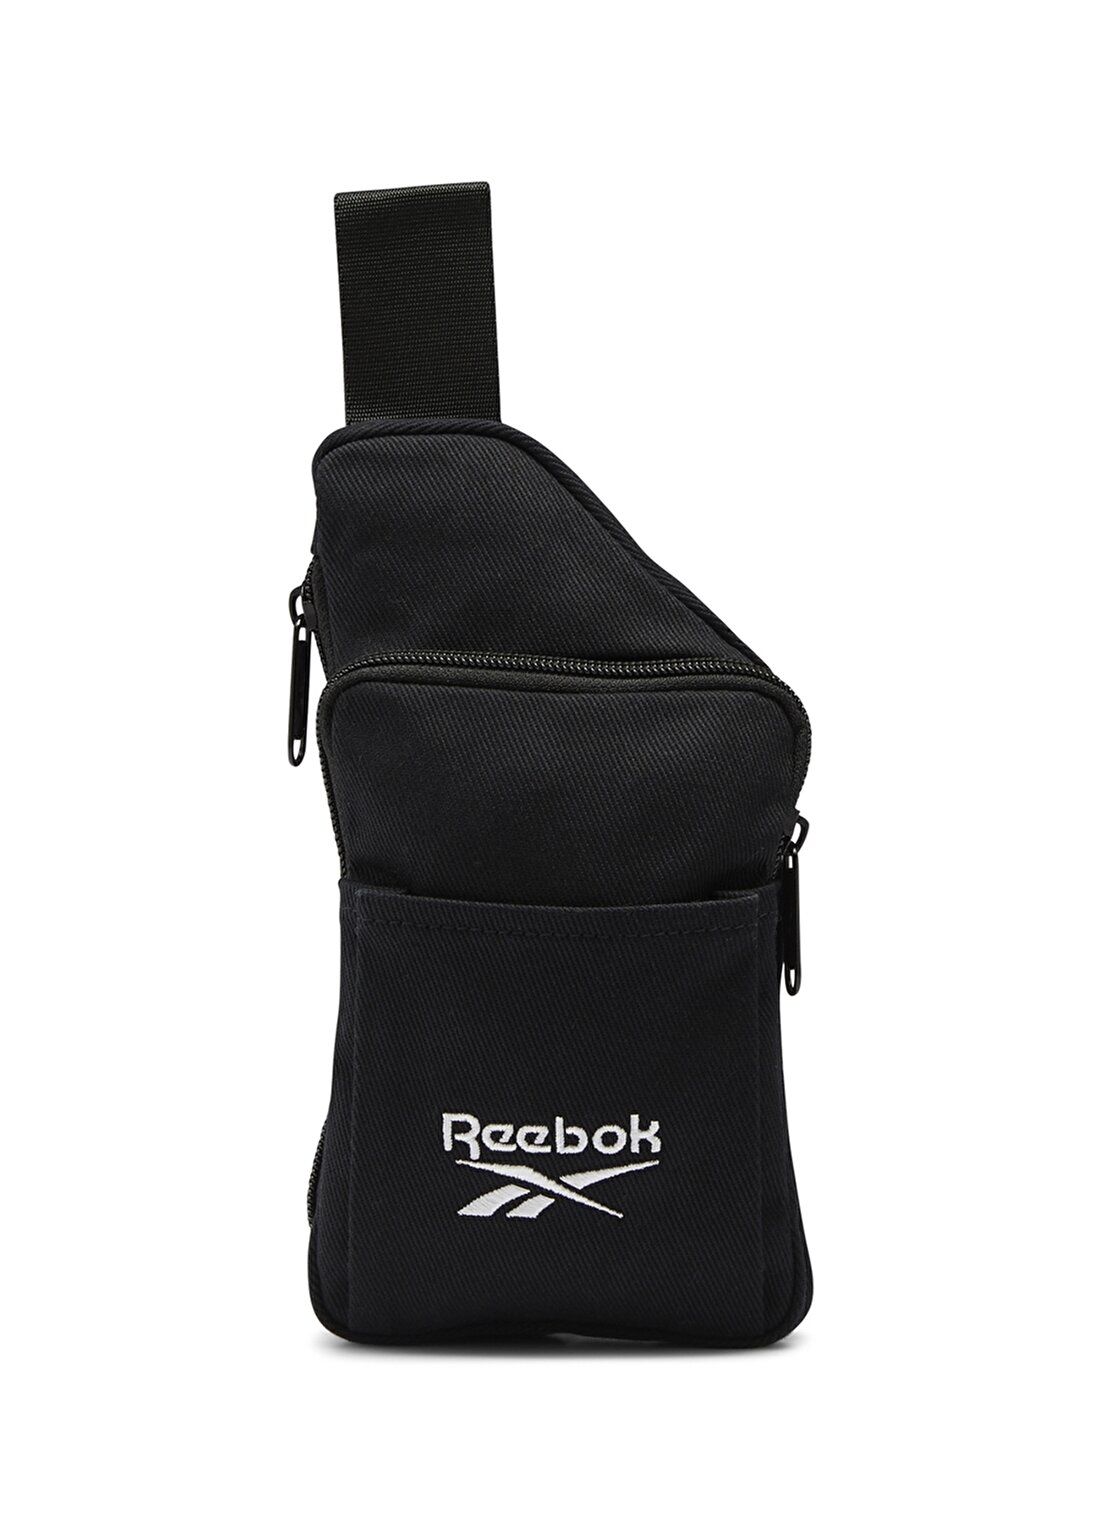 Reebok Polyester Siyah Unisex Bel Çantasi H36535 CL FO Small Sling Bag